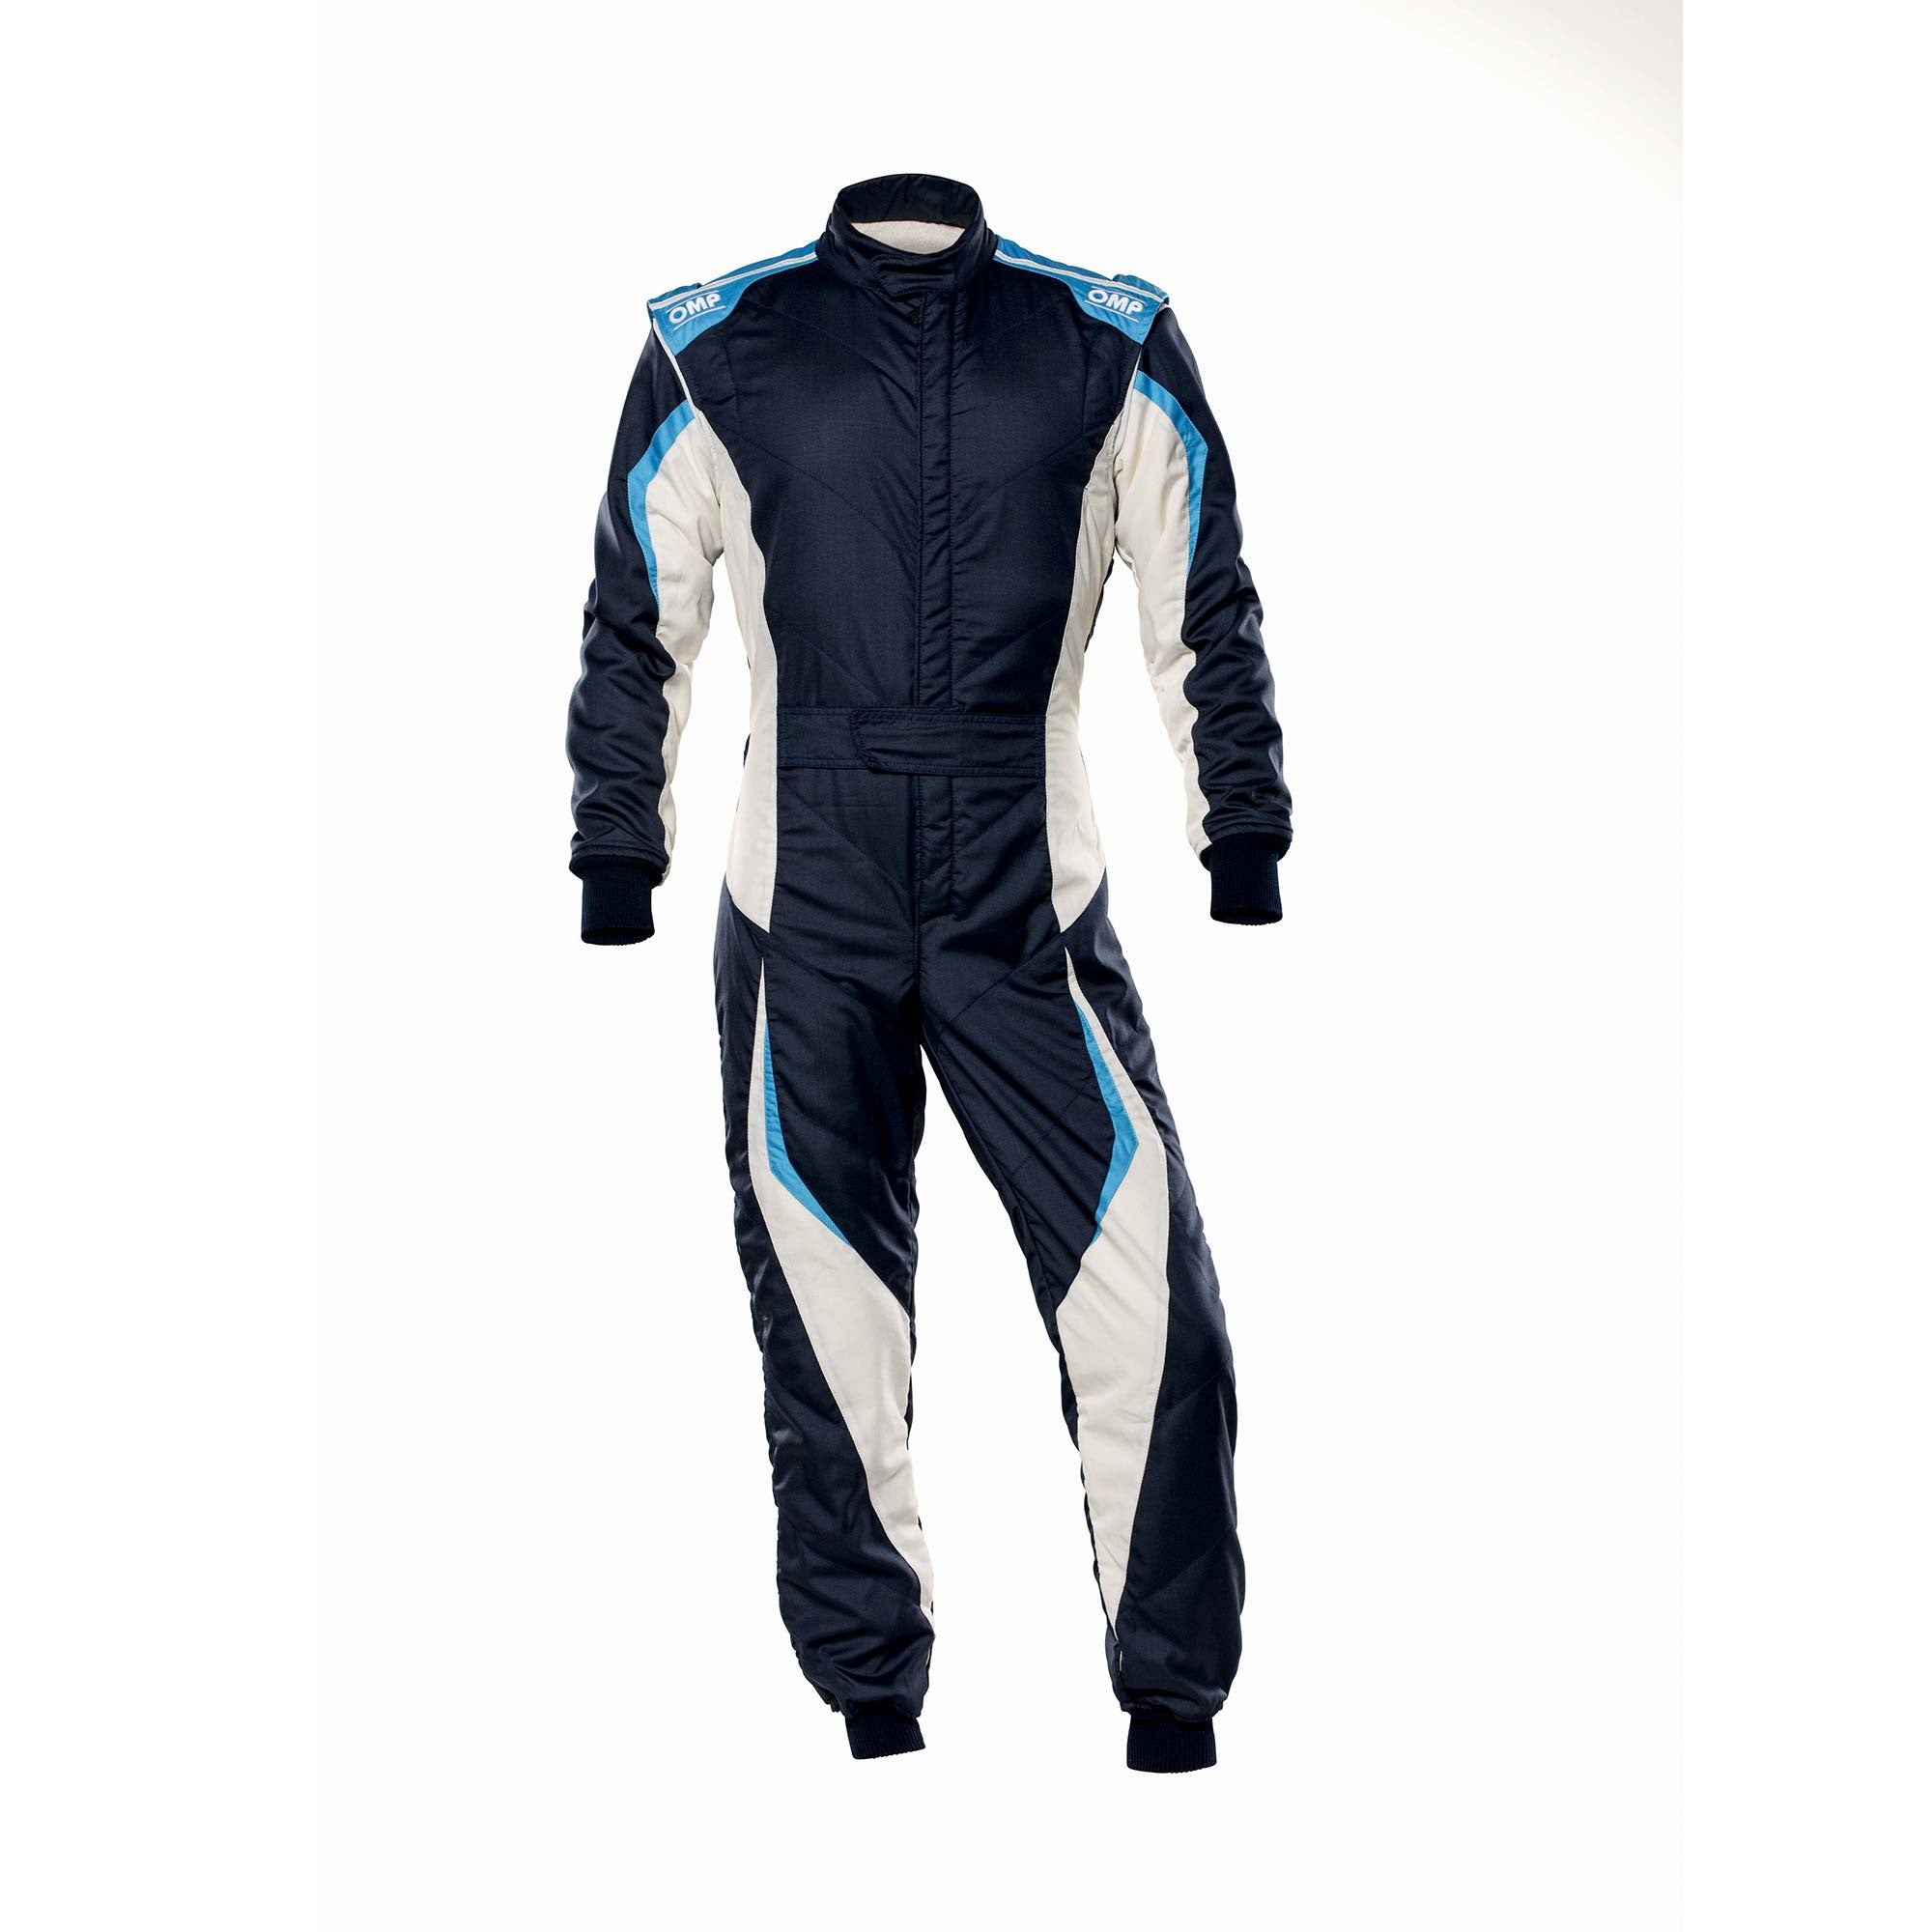 OMP IA0-1859-B01-246-60 Racing suit TECNICA EVO MY2021, FIA 8856-2018, navy blue/white/grey/cyan, size 60 Photo-0 